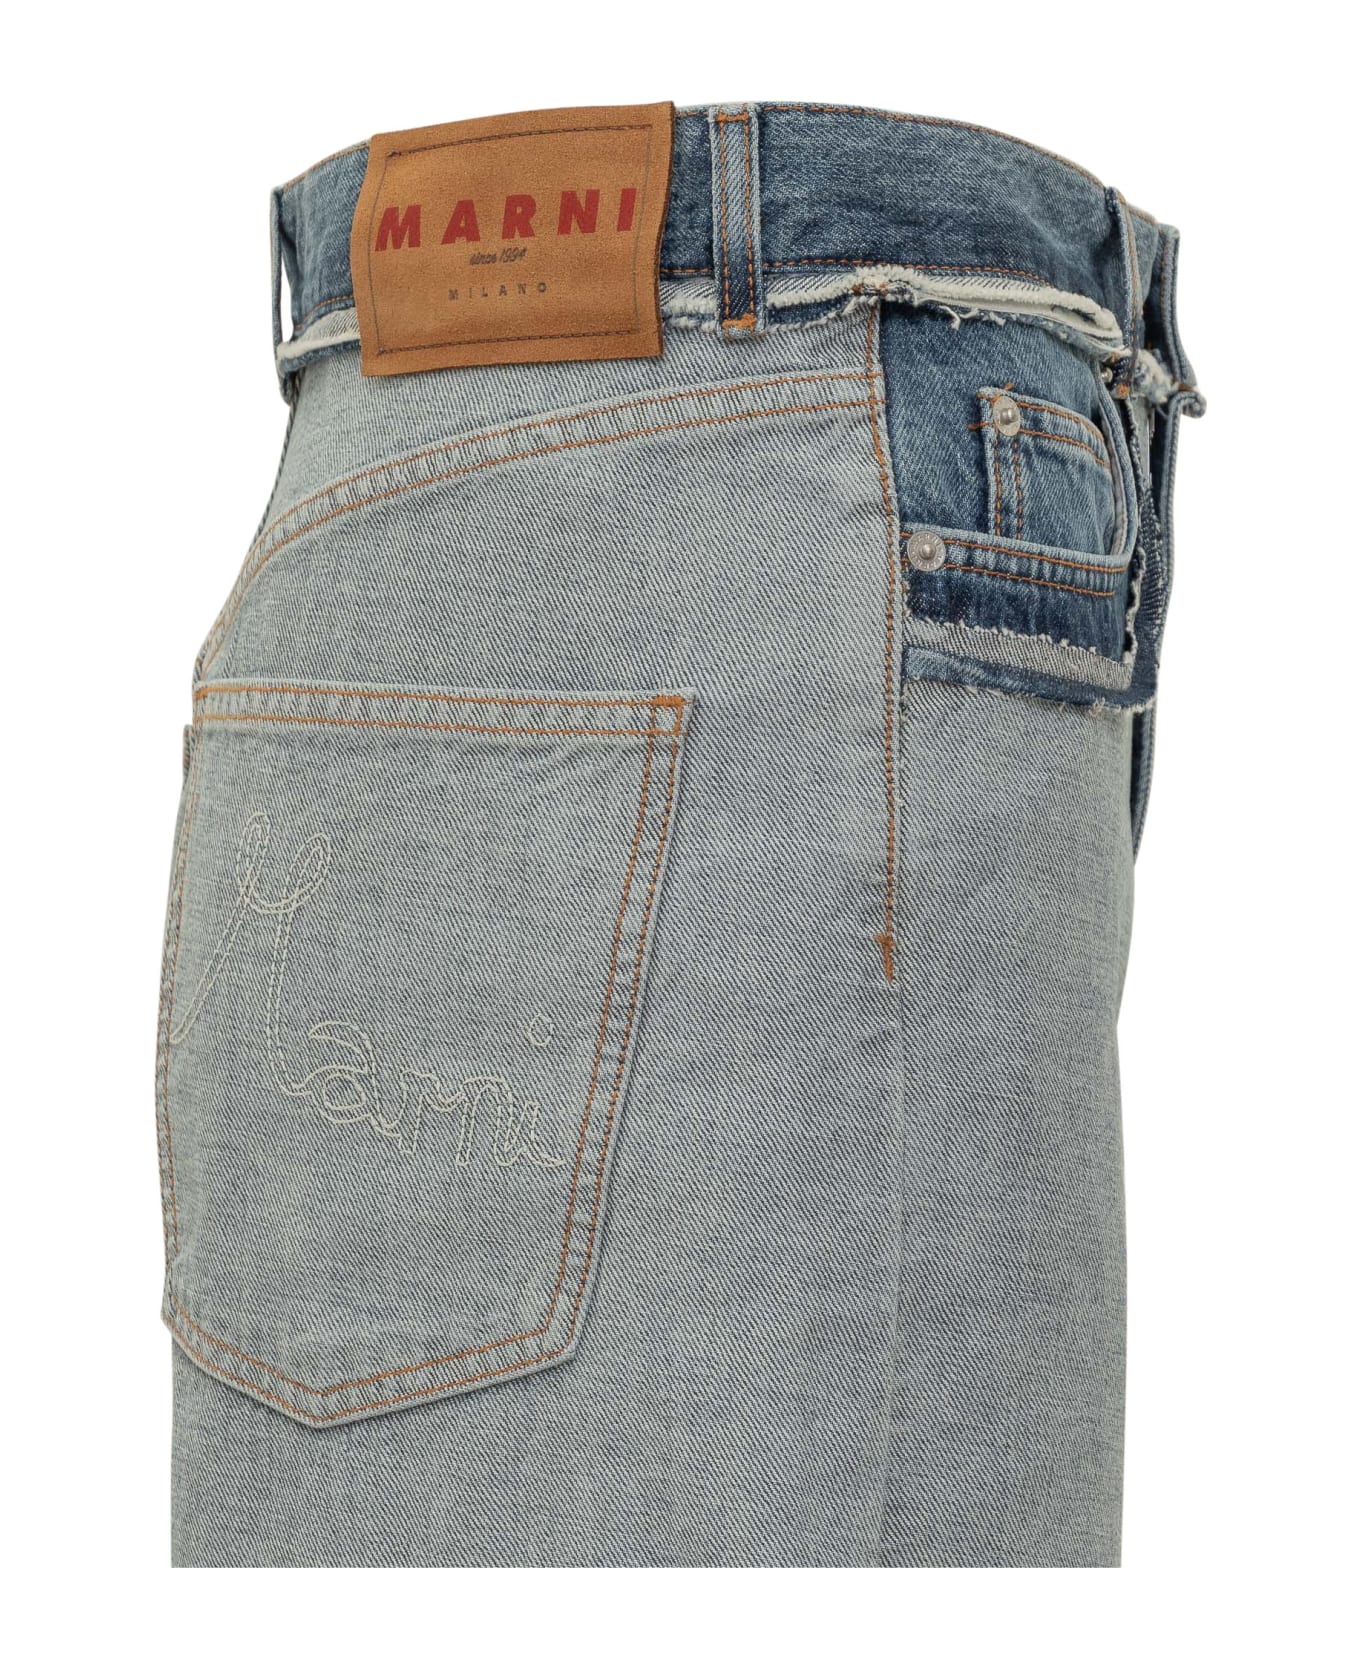 Marni Trousers - BLUE デニム